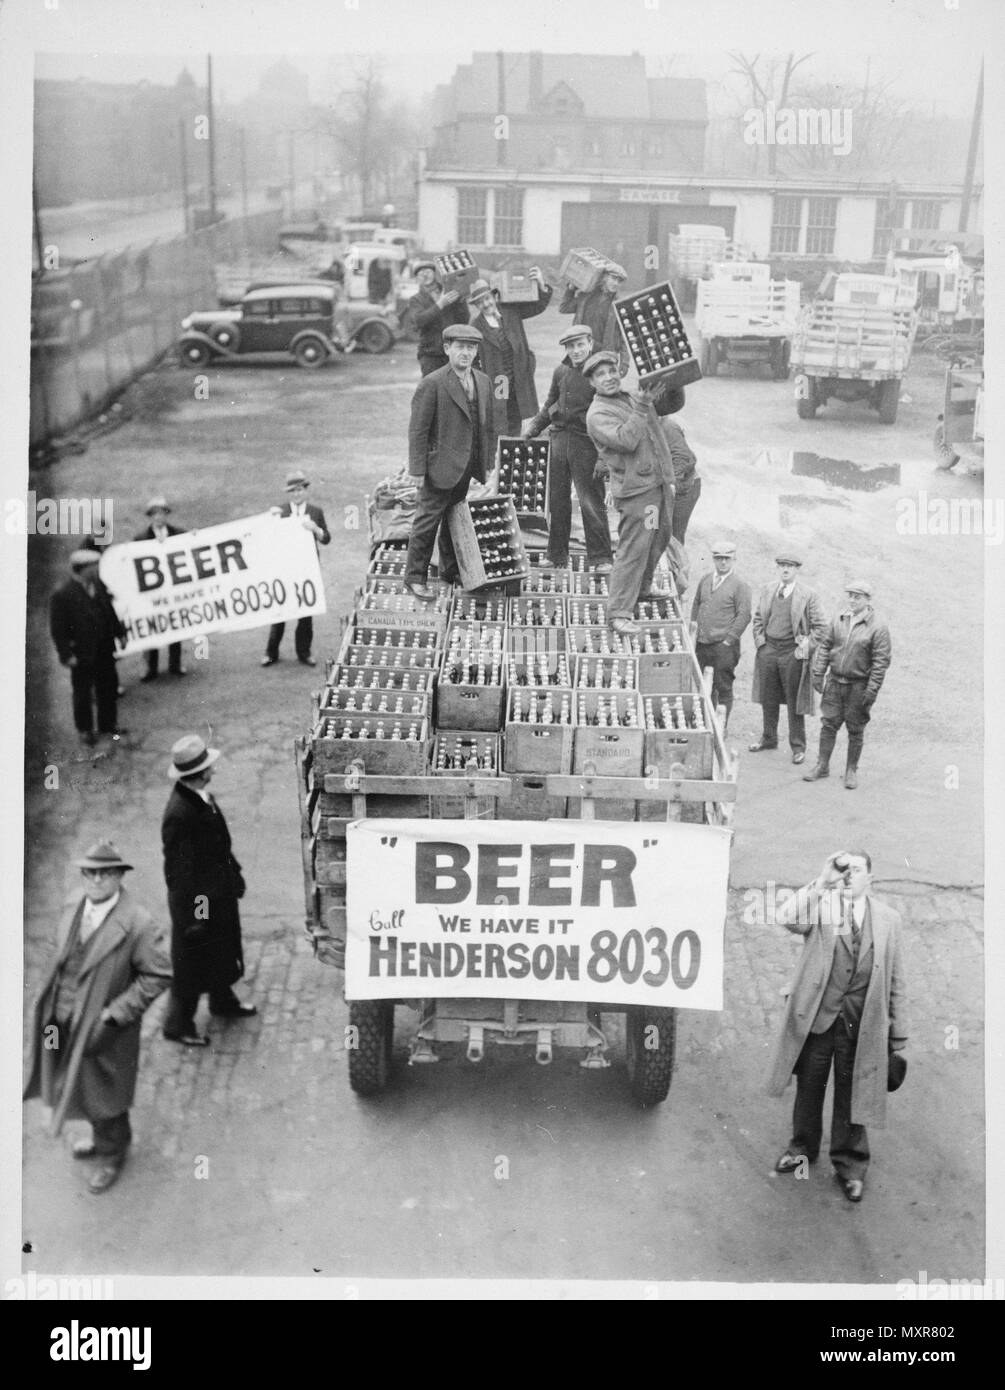 Weil die lokalen Brauereien beantwortet haben würde keines der Eigenen Brew Eigenschaft im Alter von vor dem 1. Mai, Cleveland hatte Ihr Bier aus externen Quellen, wenn Verbot beendet, 4/9/1933 zu erhalten Stockfoto